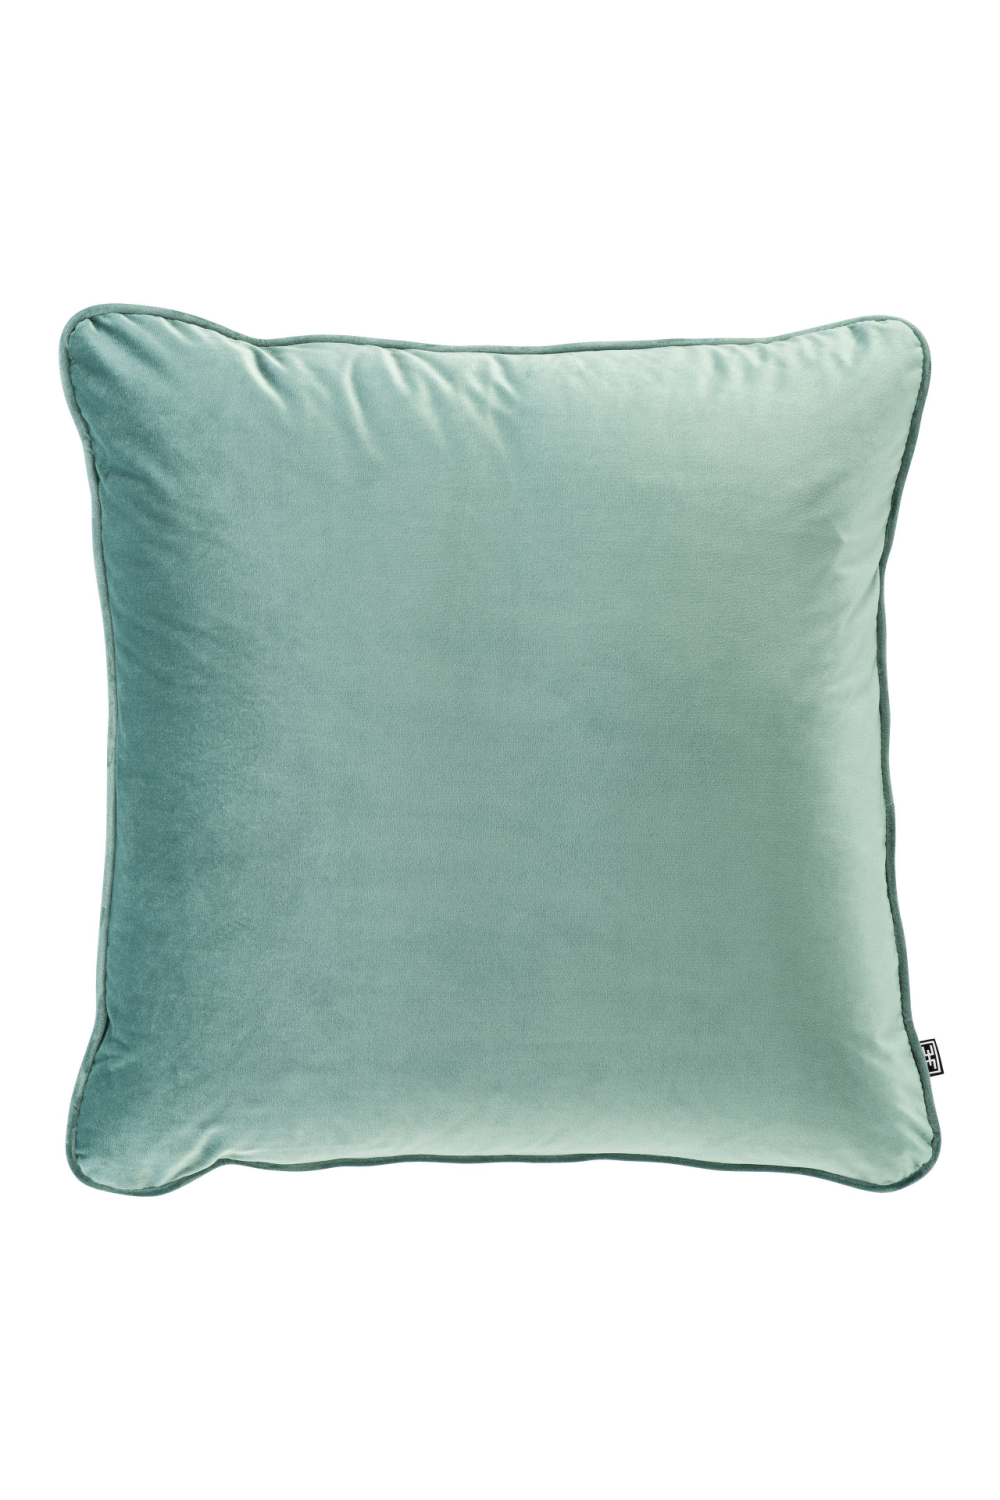 Square Velvet Turquoise Pillow | Eichholtz Roche | OROA